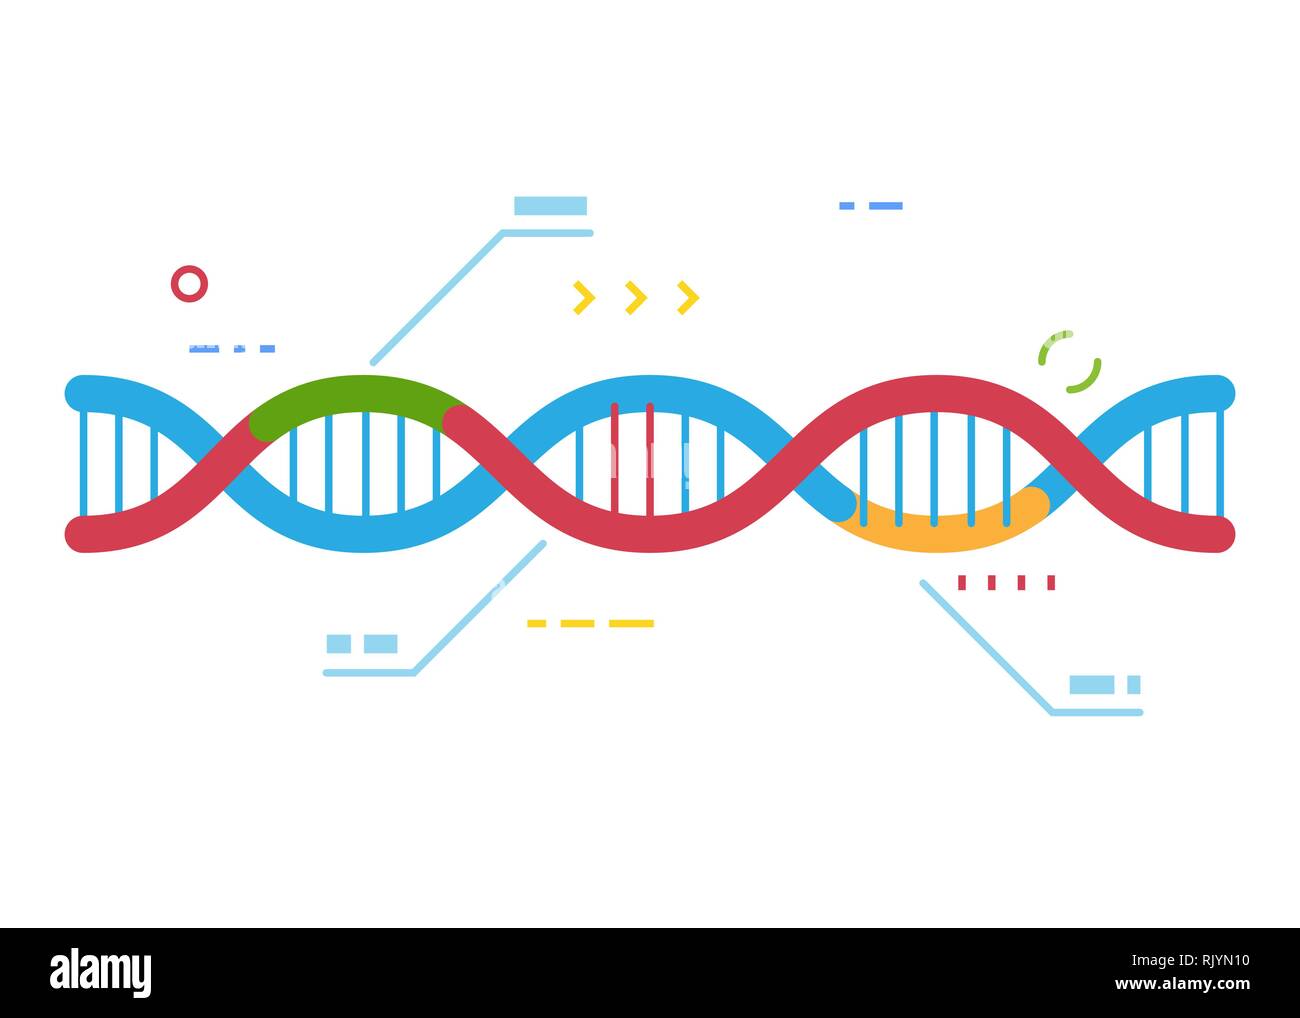 DNA-Molekül mit Regionen mit unterschiedlichen Farben. Scharfe Cas9-Gens Instandsetzung Technologie. Genetische Reparatur und Infografik. Prüfung der menschlichen DNA. Zeile Stock Vektor